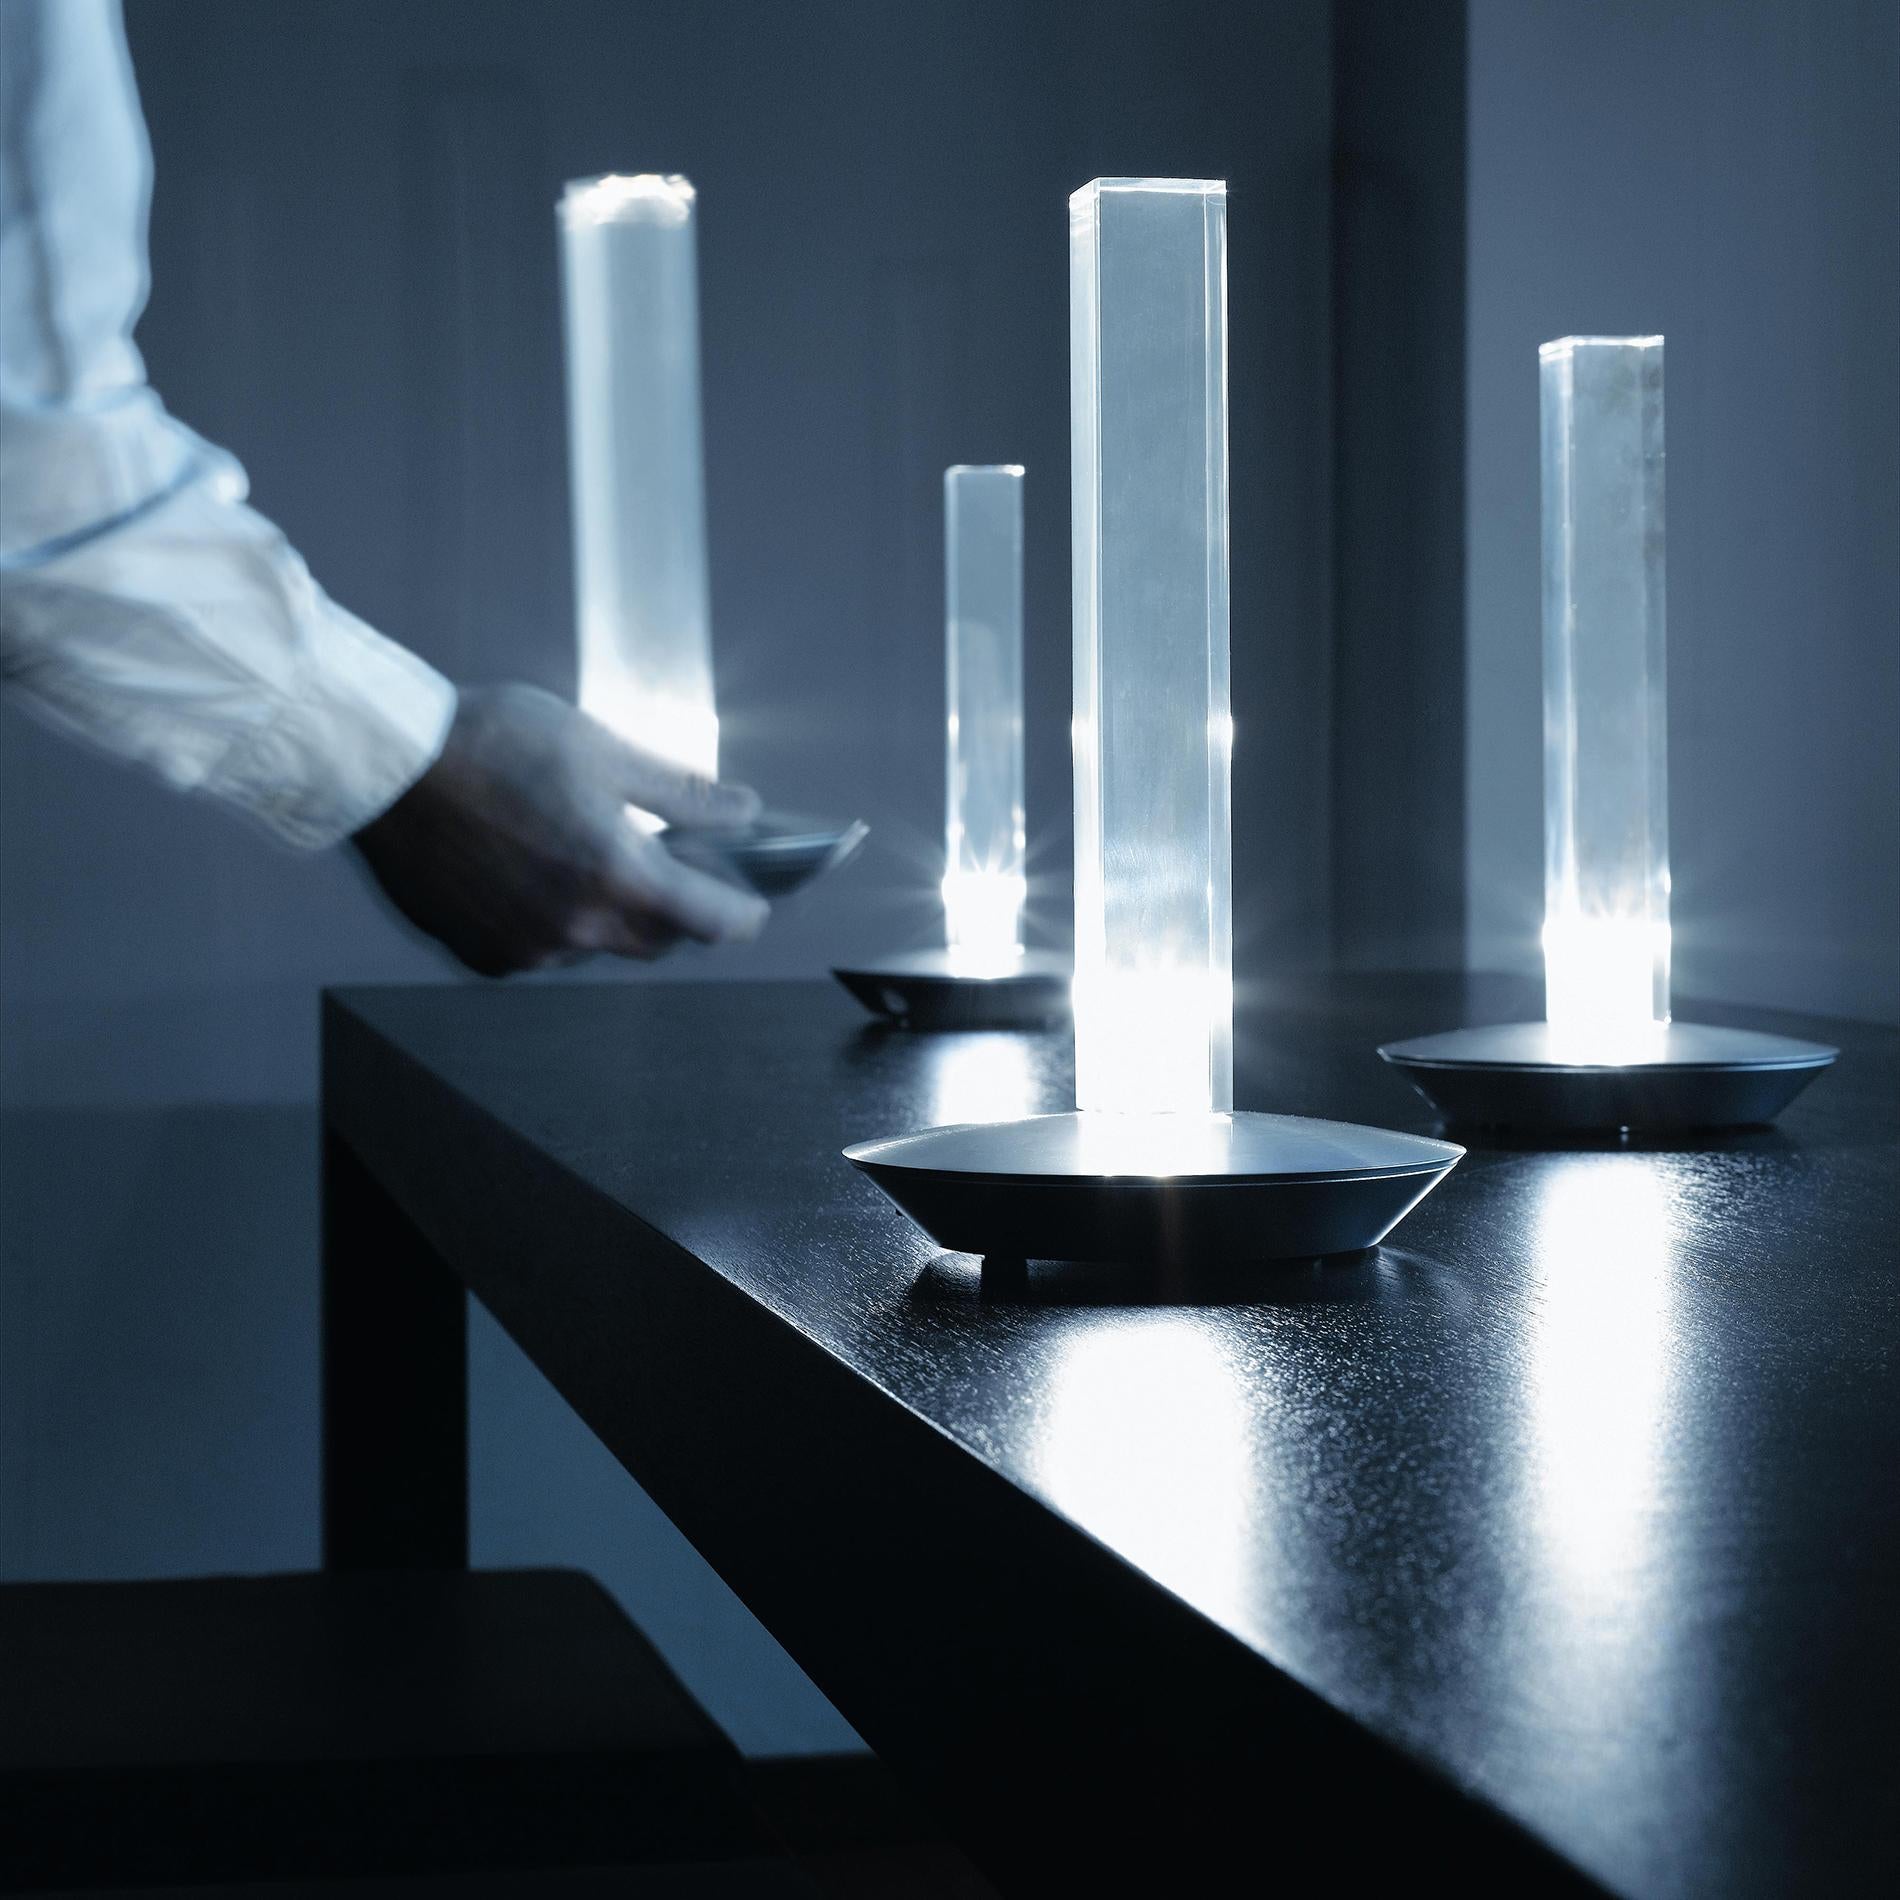 Lampe de table 'Cand-led' conçue par Marta Laudani & Marco Romanel en 2005.
Lampe de table à lumière diffuse, avec LED. Abat-jour en PMMA transparent. Couvercle de base en aluminium anodisé satiné. Avec chargeur de batterie et filtres en plastique